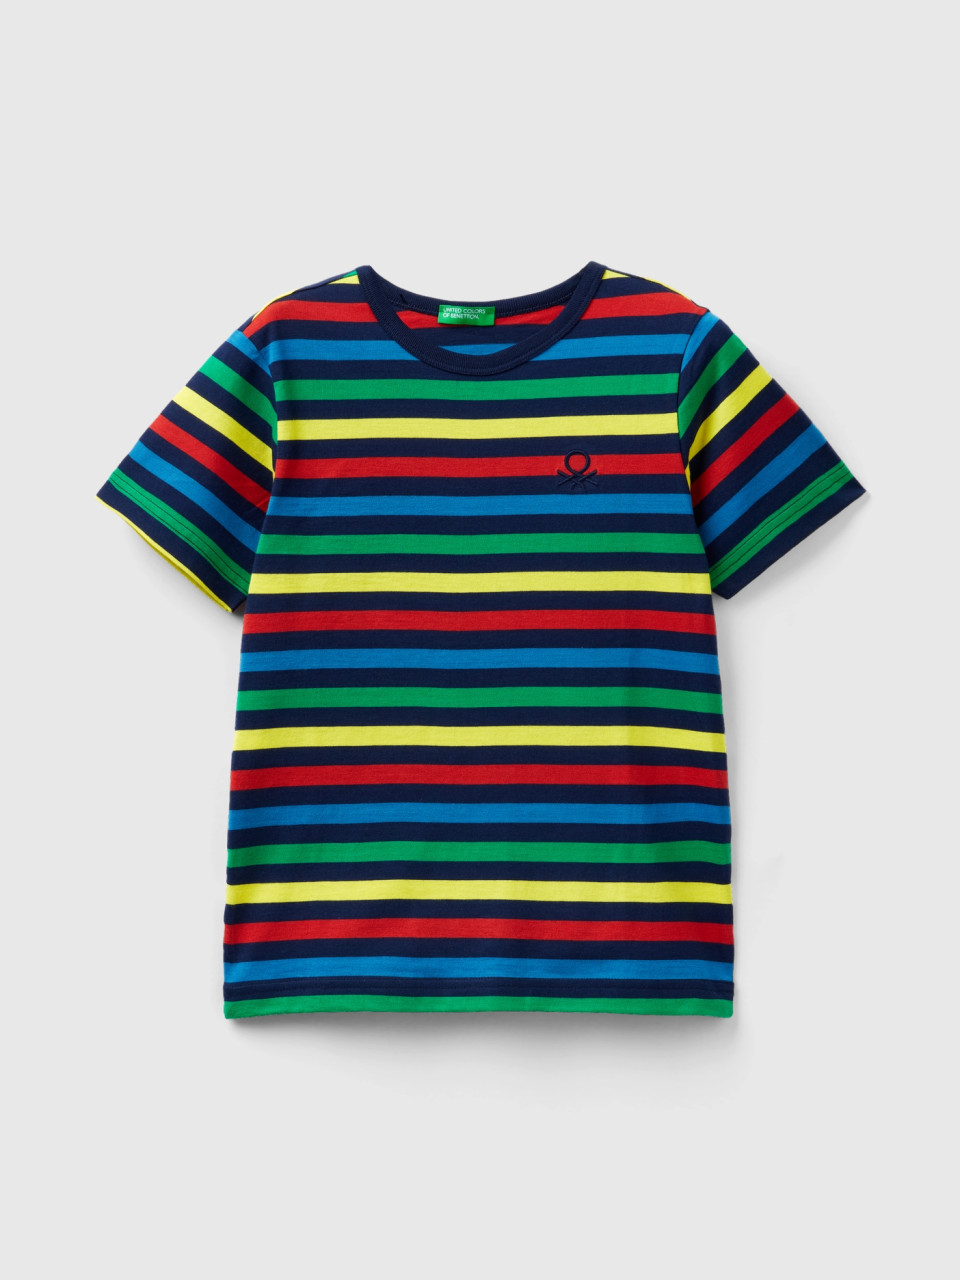 Benetton, Striped 100% Cotton T-shirt, Multi-color, Kids